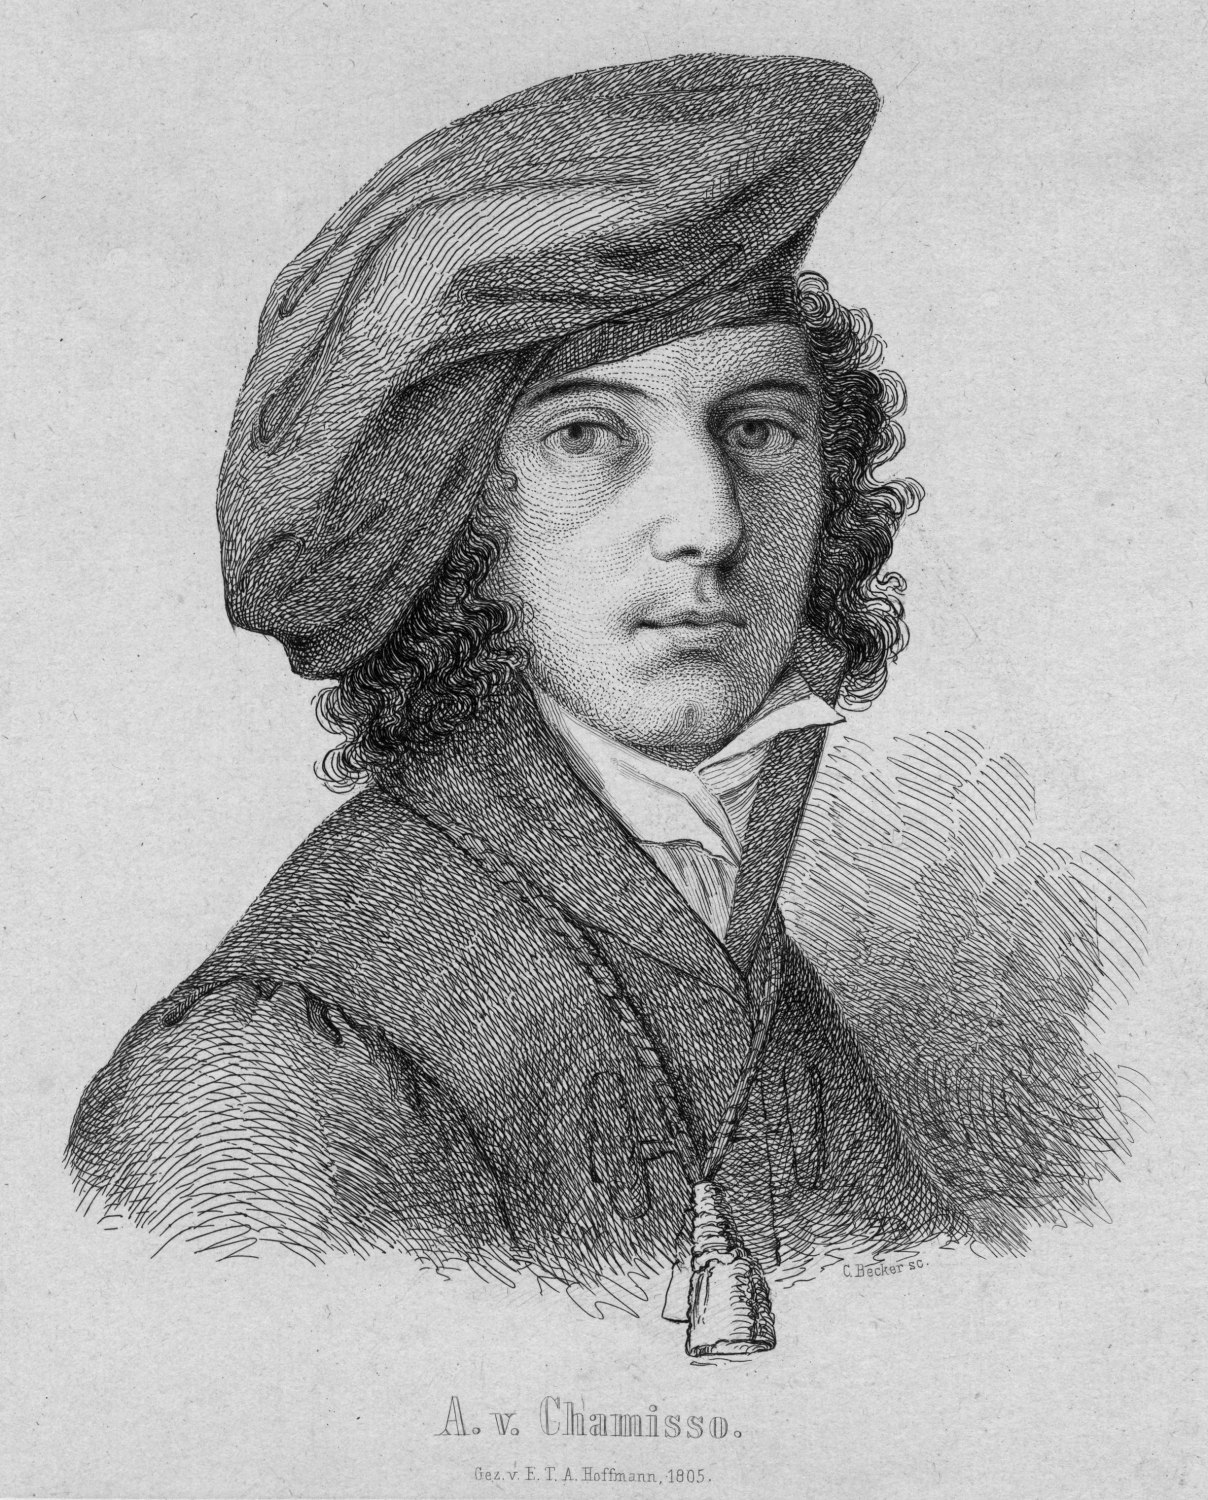 Kupferstich (1805) von C. Becker nach einer Porträtzeichnung von E.T.A. Hoffmann: Adelbert von Chamisso. Bild-Nr.:10010606. bpk